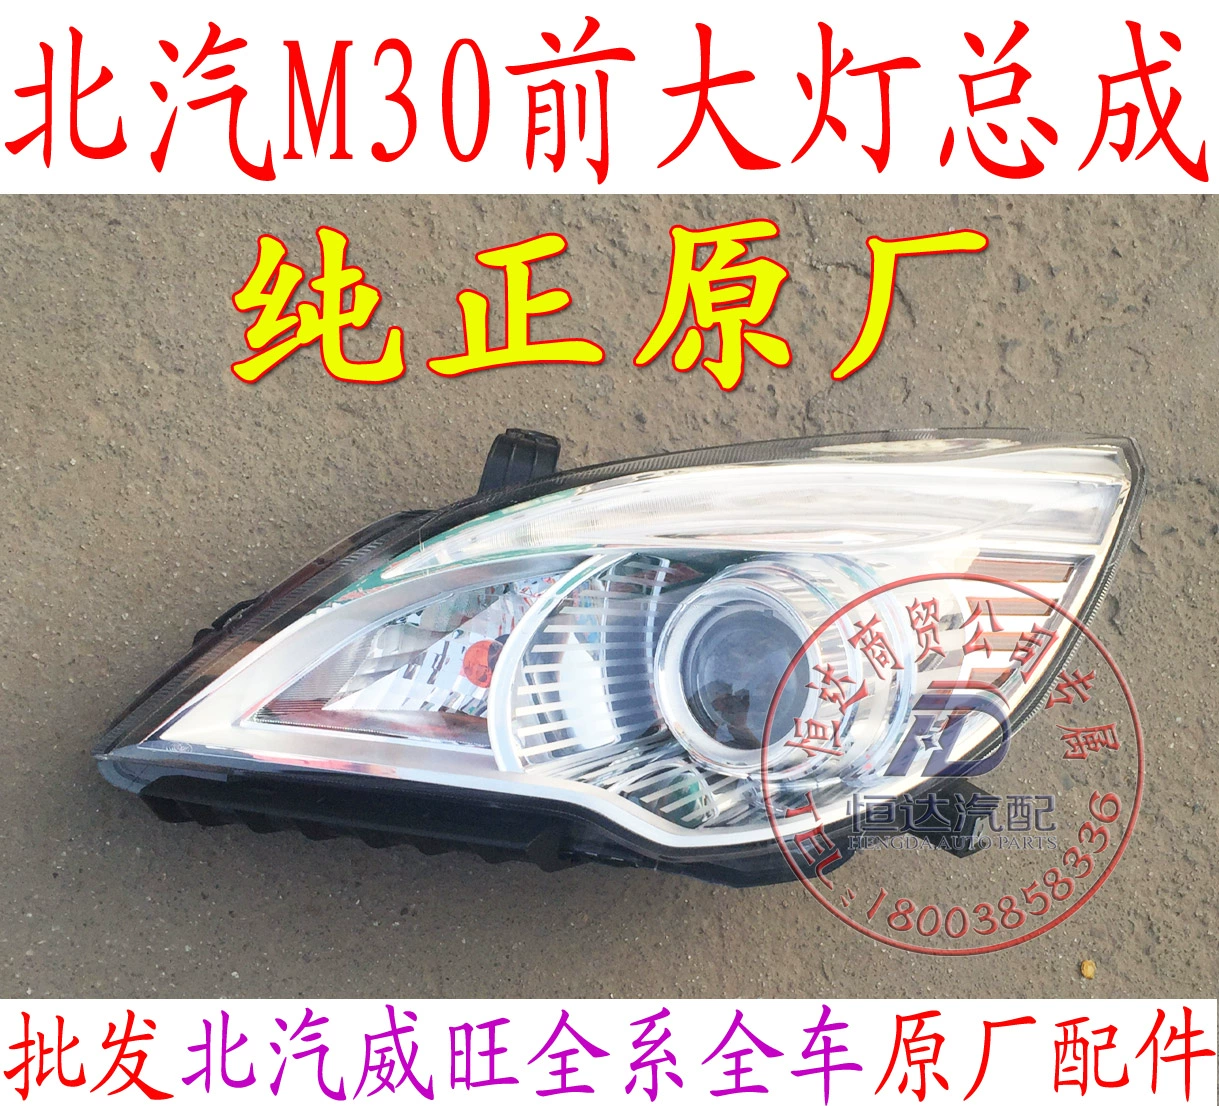 Beiqi Weiwang M30M35M20 cụm đèn pha đèn pha chiếu xa và chiếu gần đèn chạy ban đêm nguyên bản phụ kiện - Xe máy Bumpers